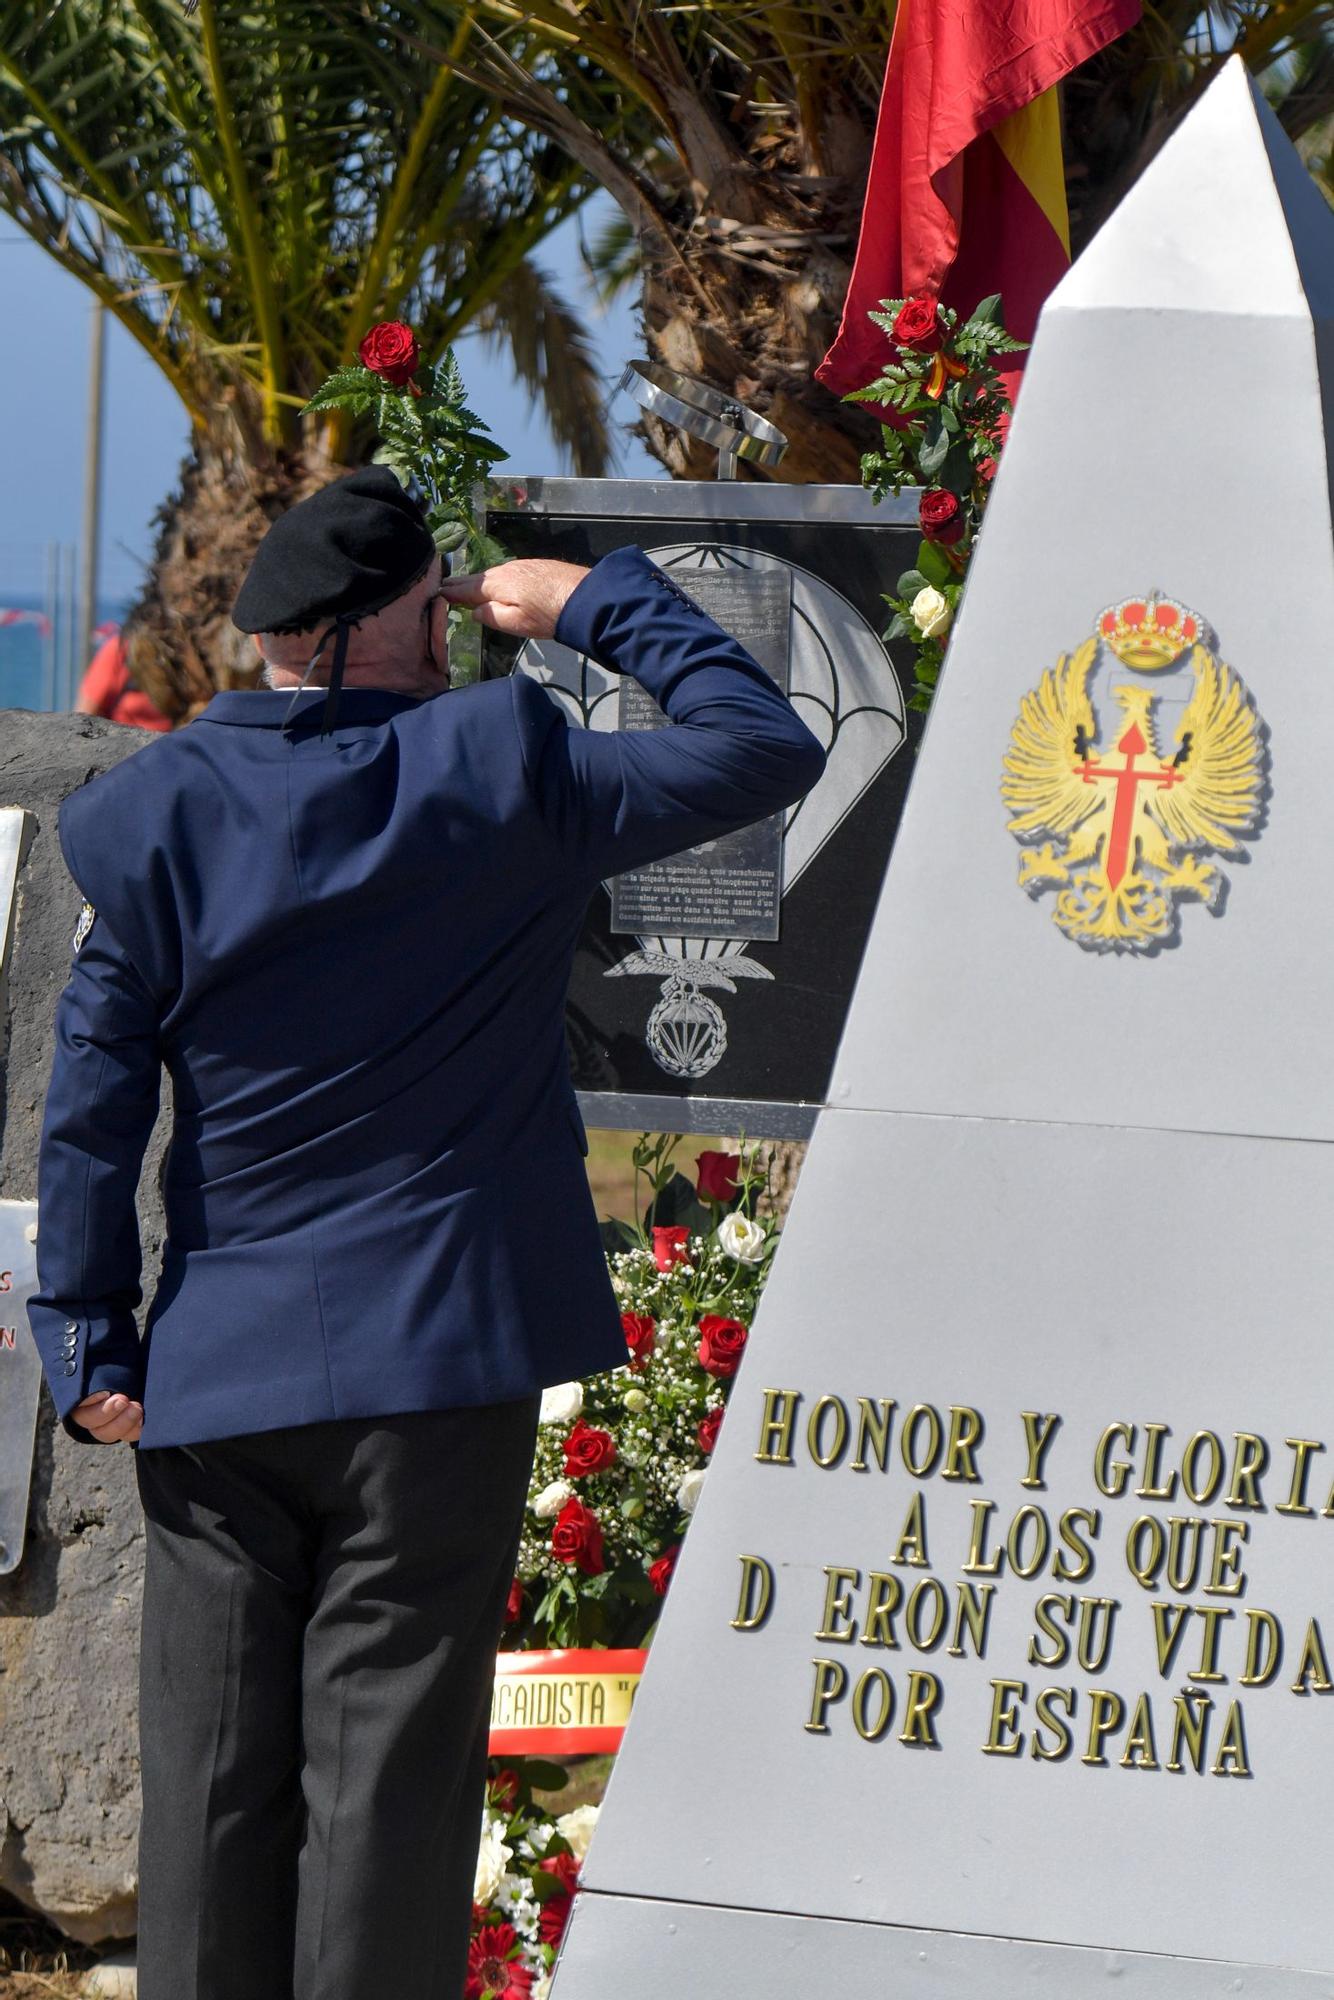 Acto de homenaje a los paracaidistas caídos en acto de servicio entre 1965 y 1979 en Maspalomas